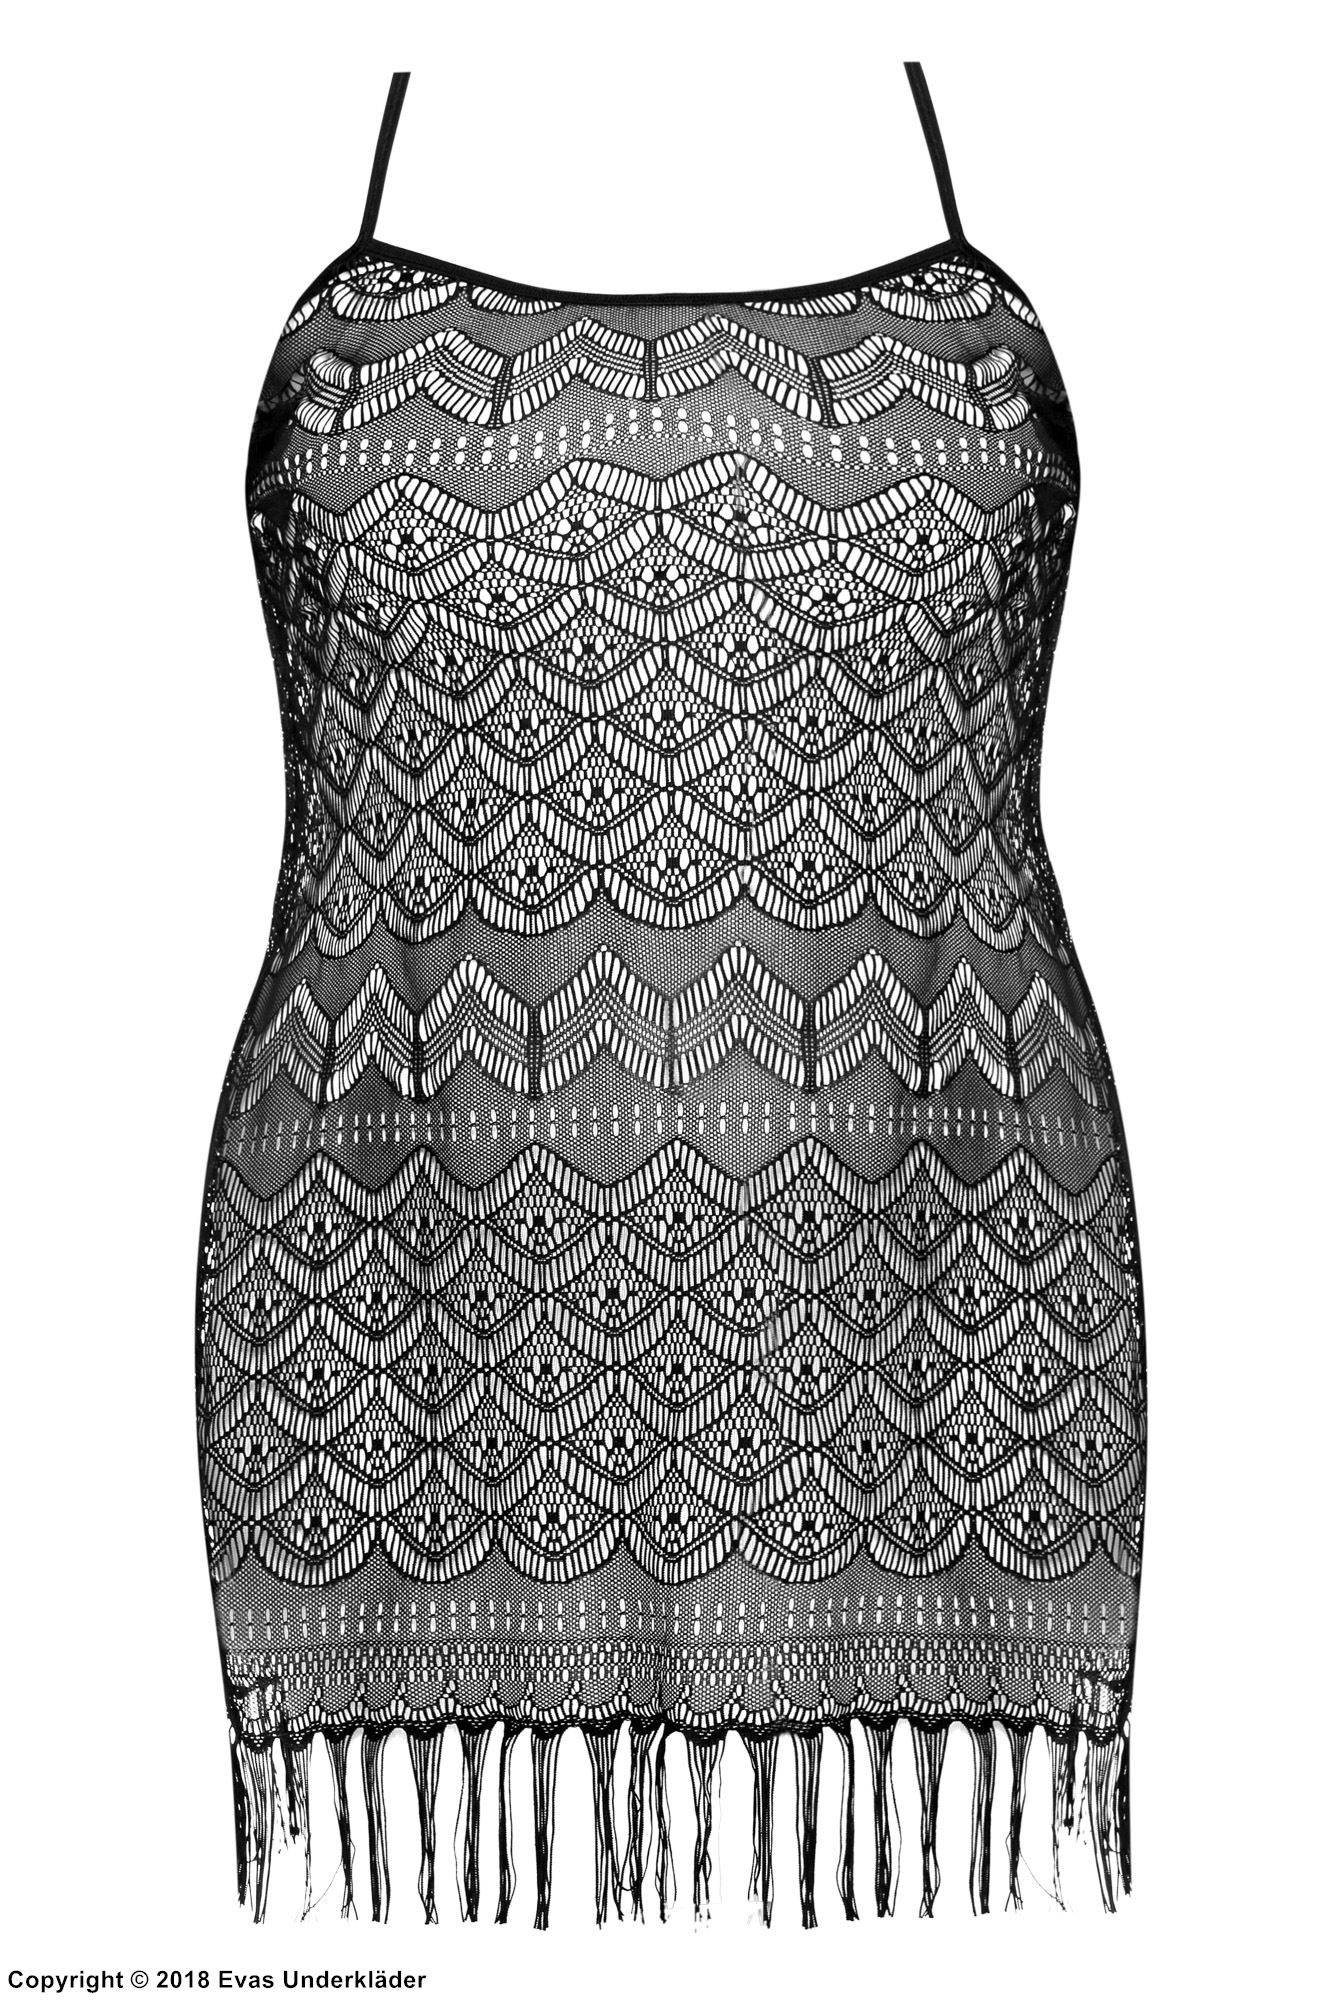 Durchsichtiges Kleid, Spitze, Fransen, detailliertes Muster, XL bis 6XL